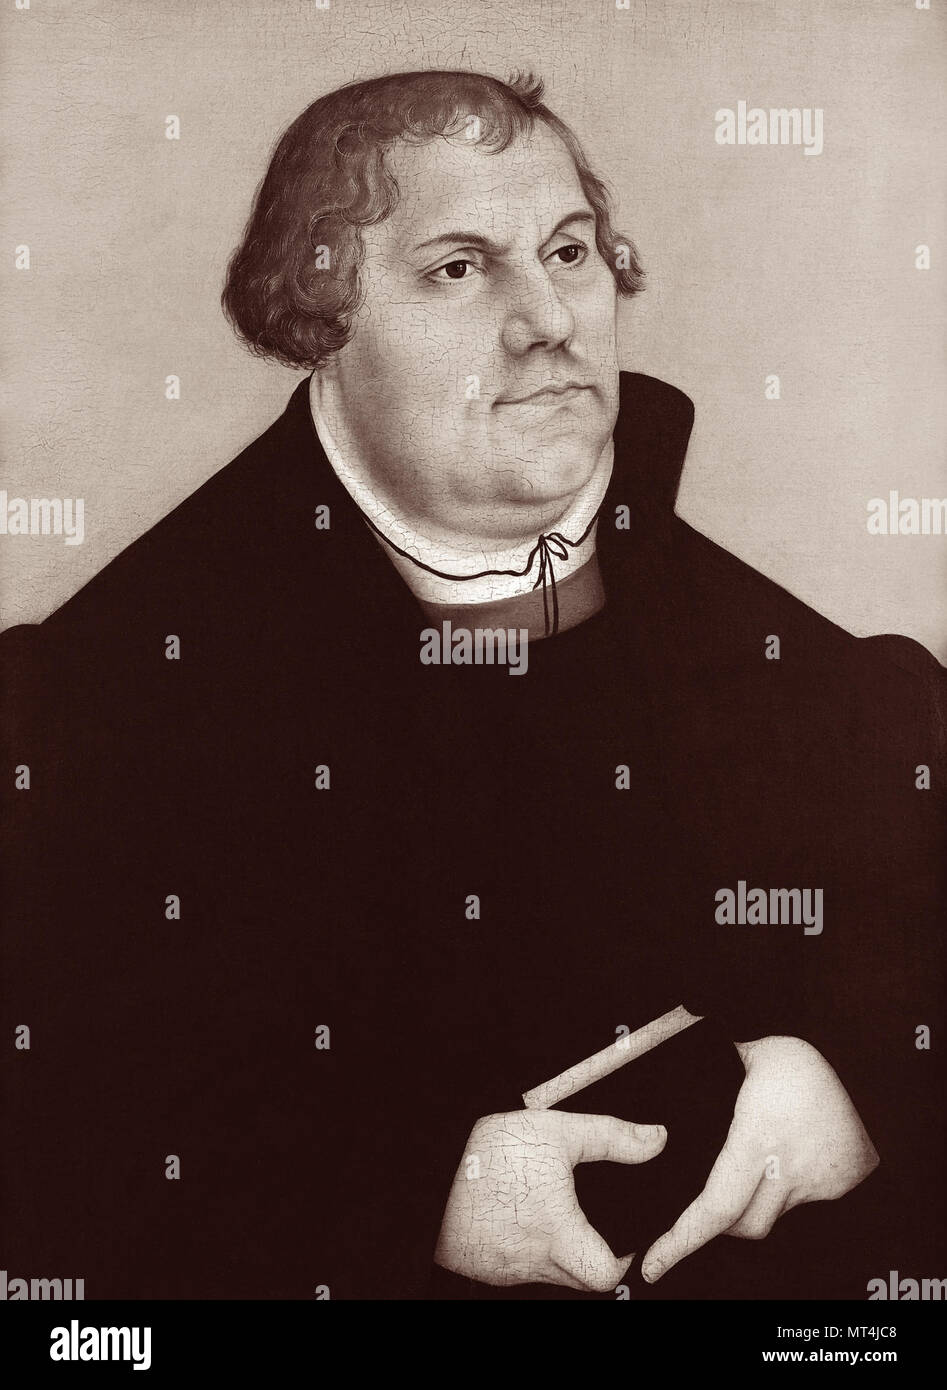 Martin Luther (1483-1546) war ein deutscher Professor, Theologe, und Schlüsselfigur in der Protestantischen Reformation, sowie als Übersetzer der Bibel in die deutsche Sprache. (Bild von einem Porträt von der Werkstatt von Lucas Cranach dem Älteren, c 1540 s). Stockfoto